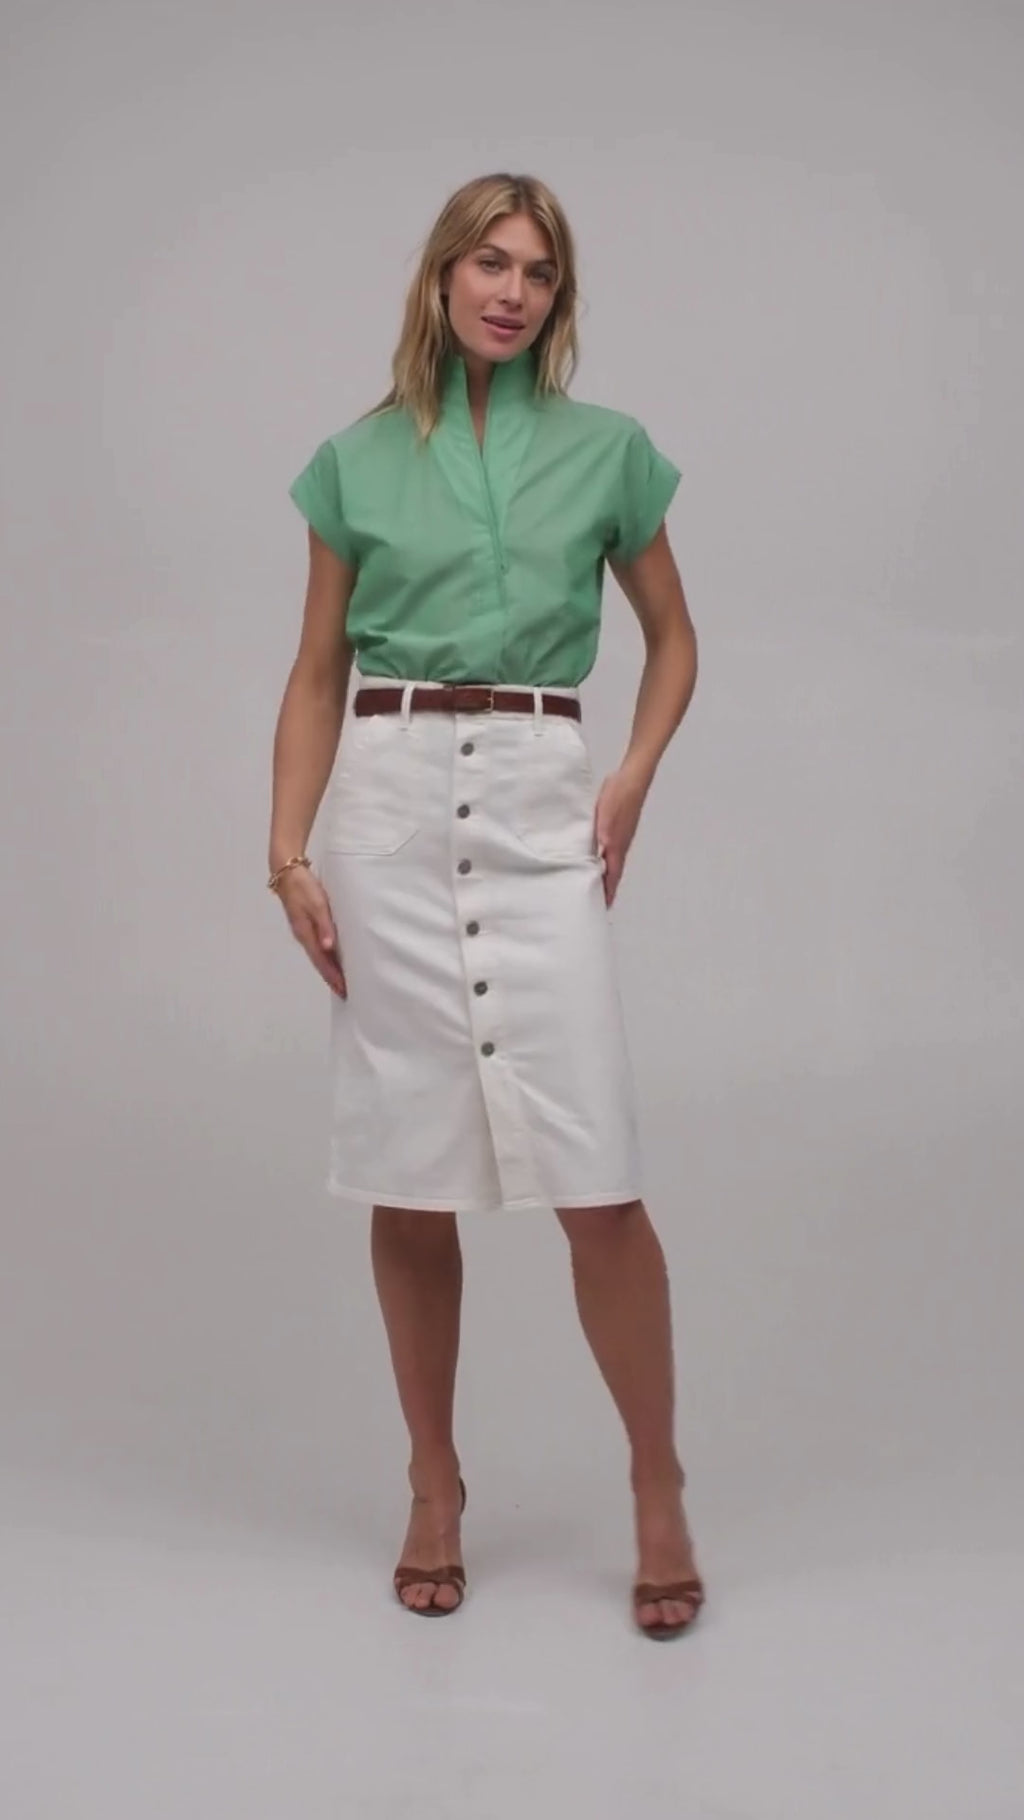 Woman modeling a light green short sleeve shirt by designer Sarah Alexandra